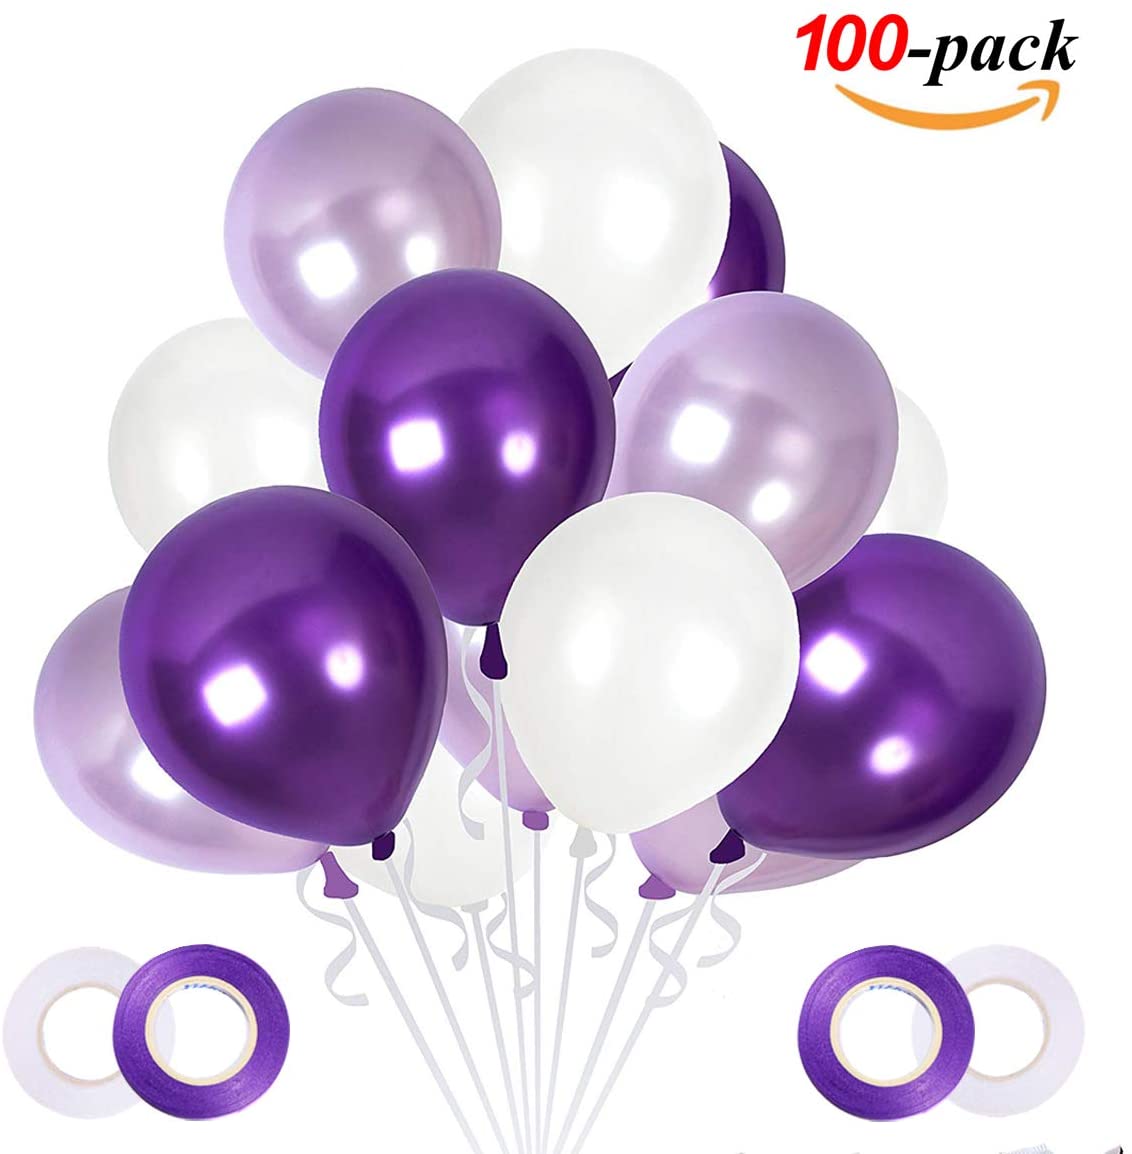 Ballong Bukett i Lila/PärlVit. 100 delar.